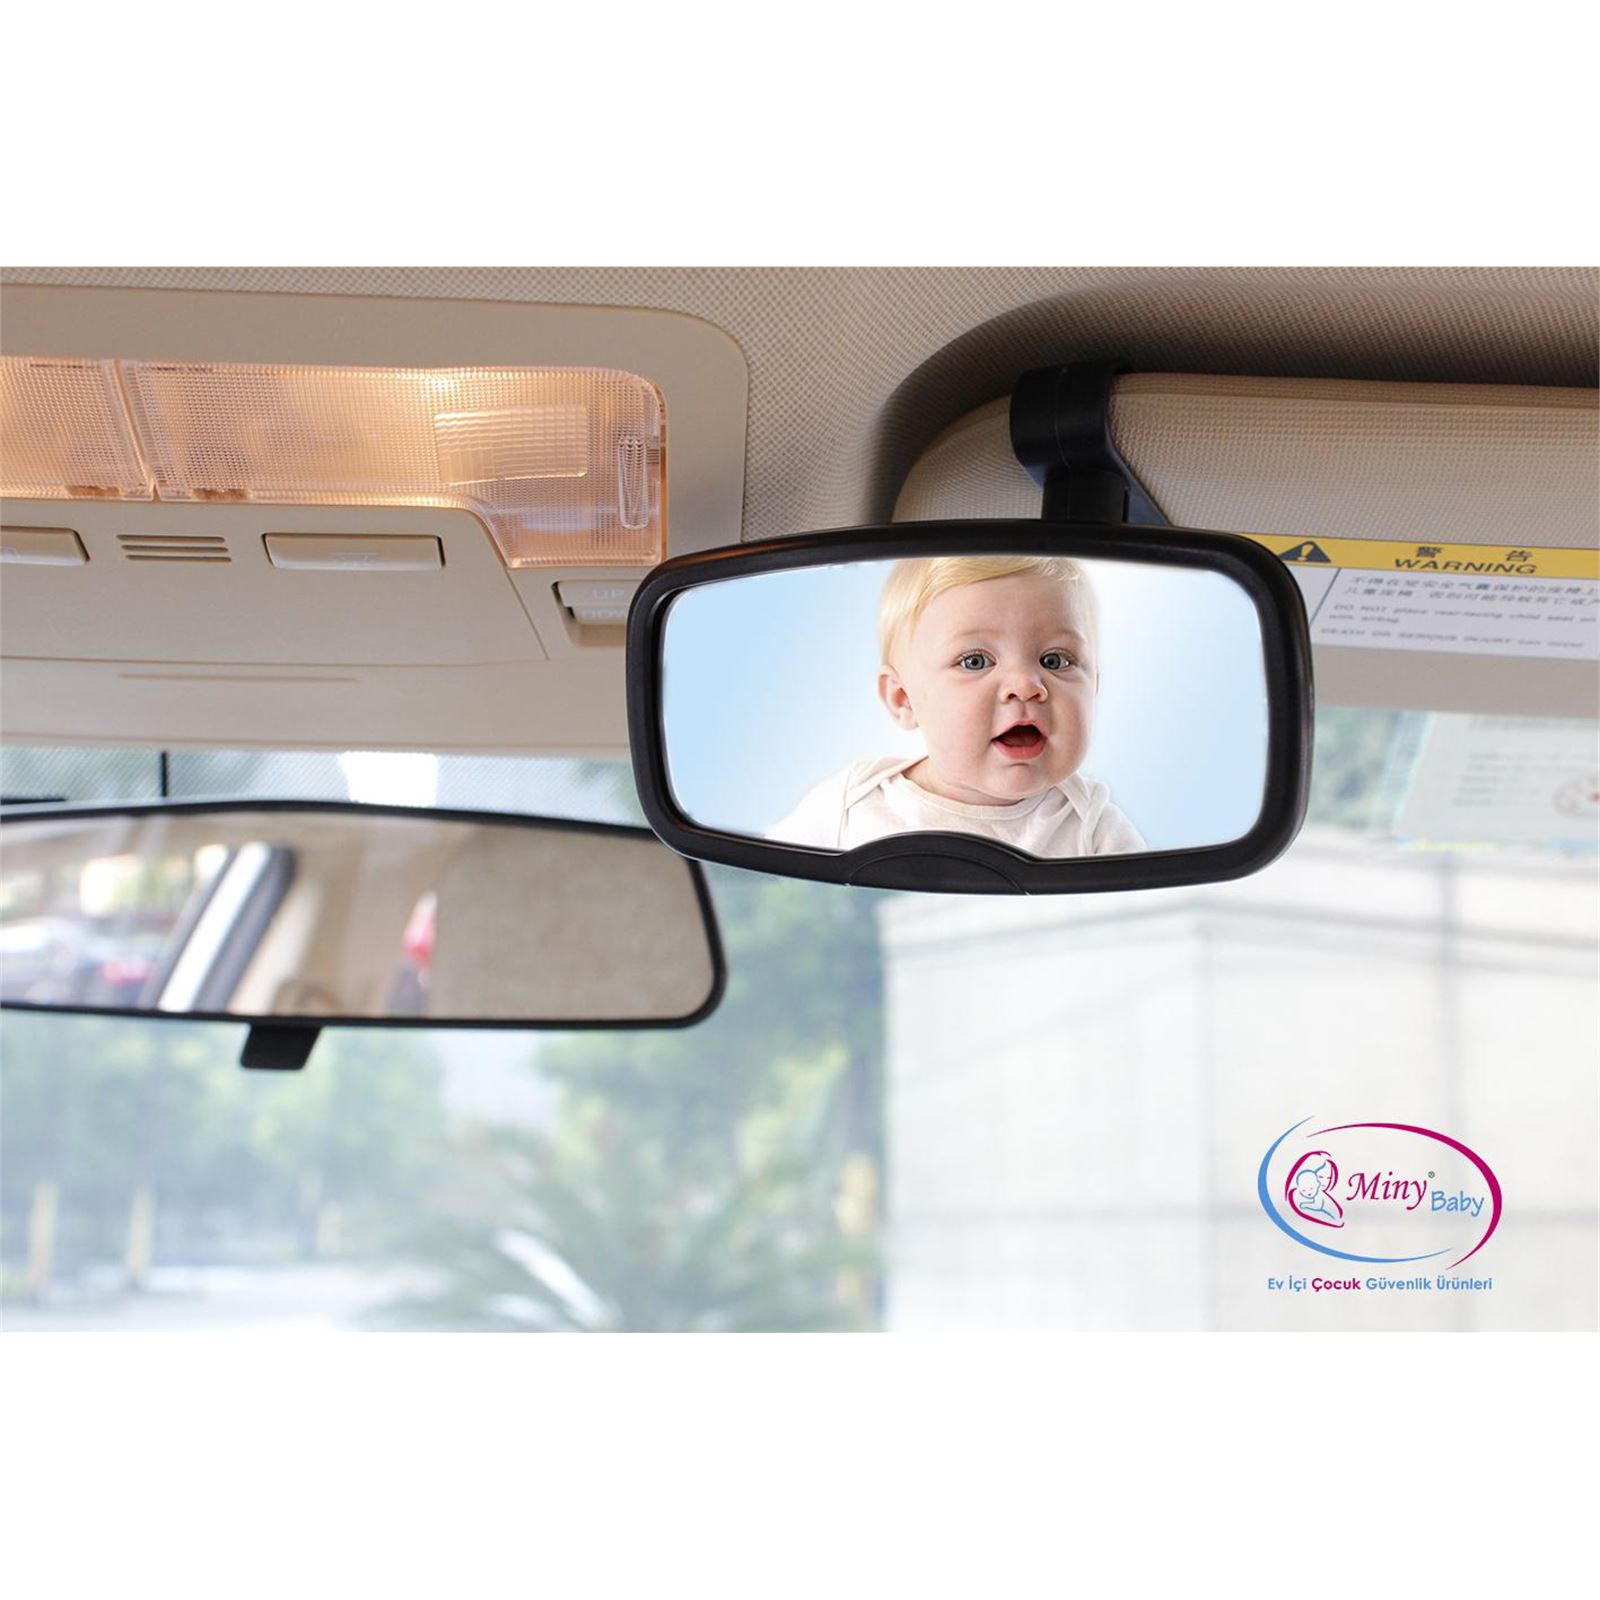 Miny Baby Vantuzlu-Klipsli Araç İçi Bebek Dikiz Aynası